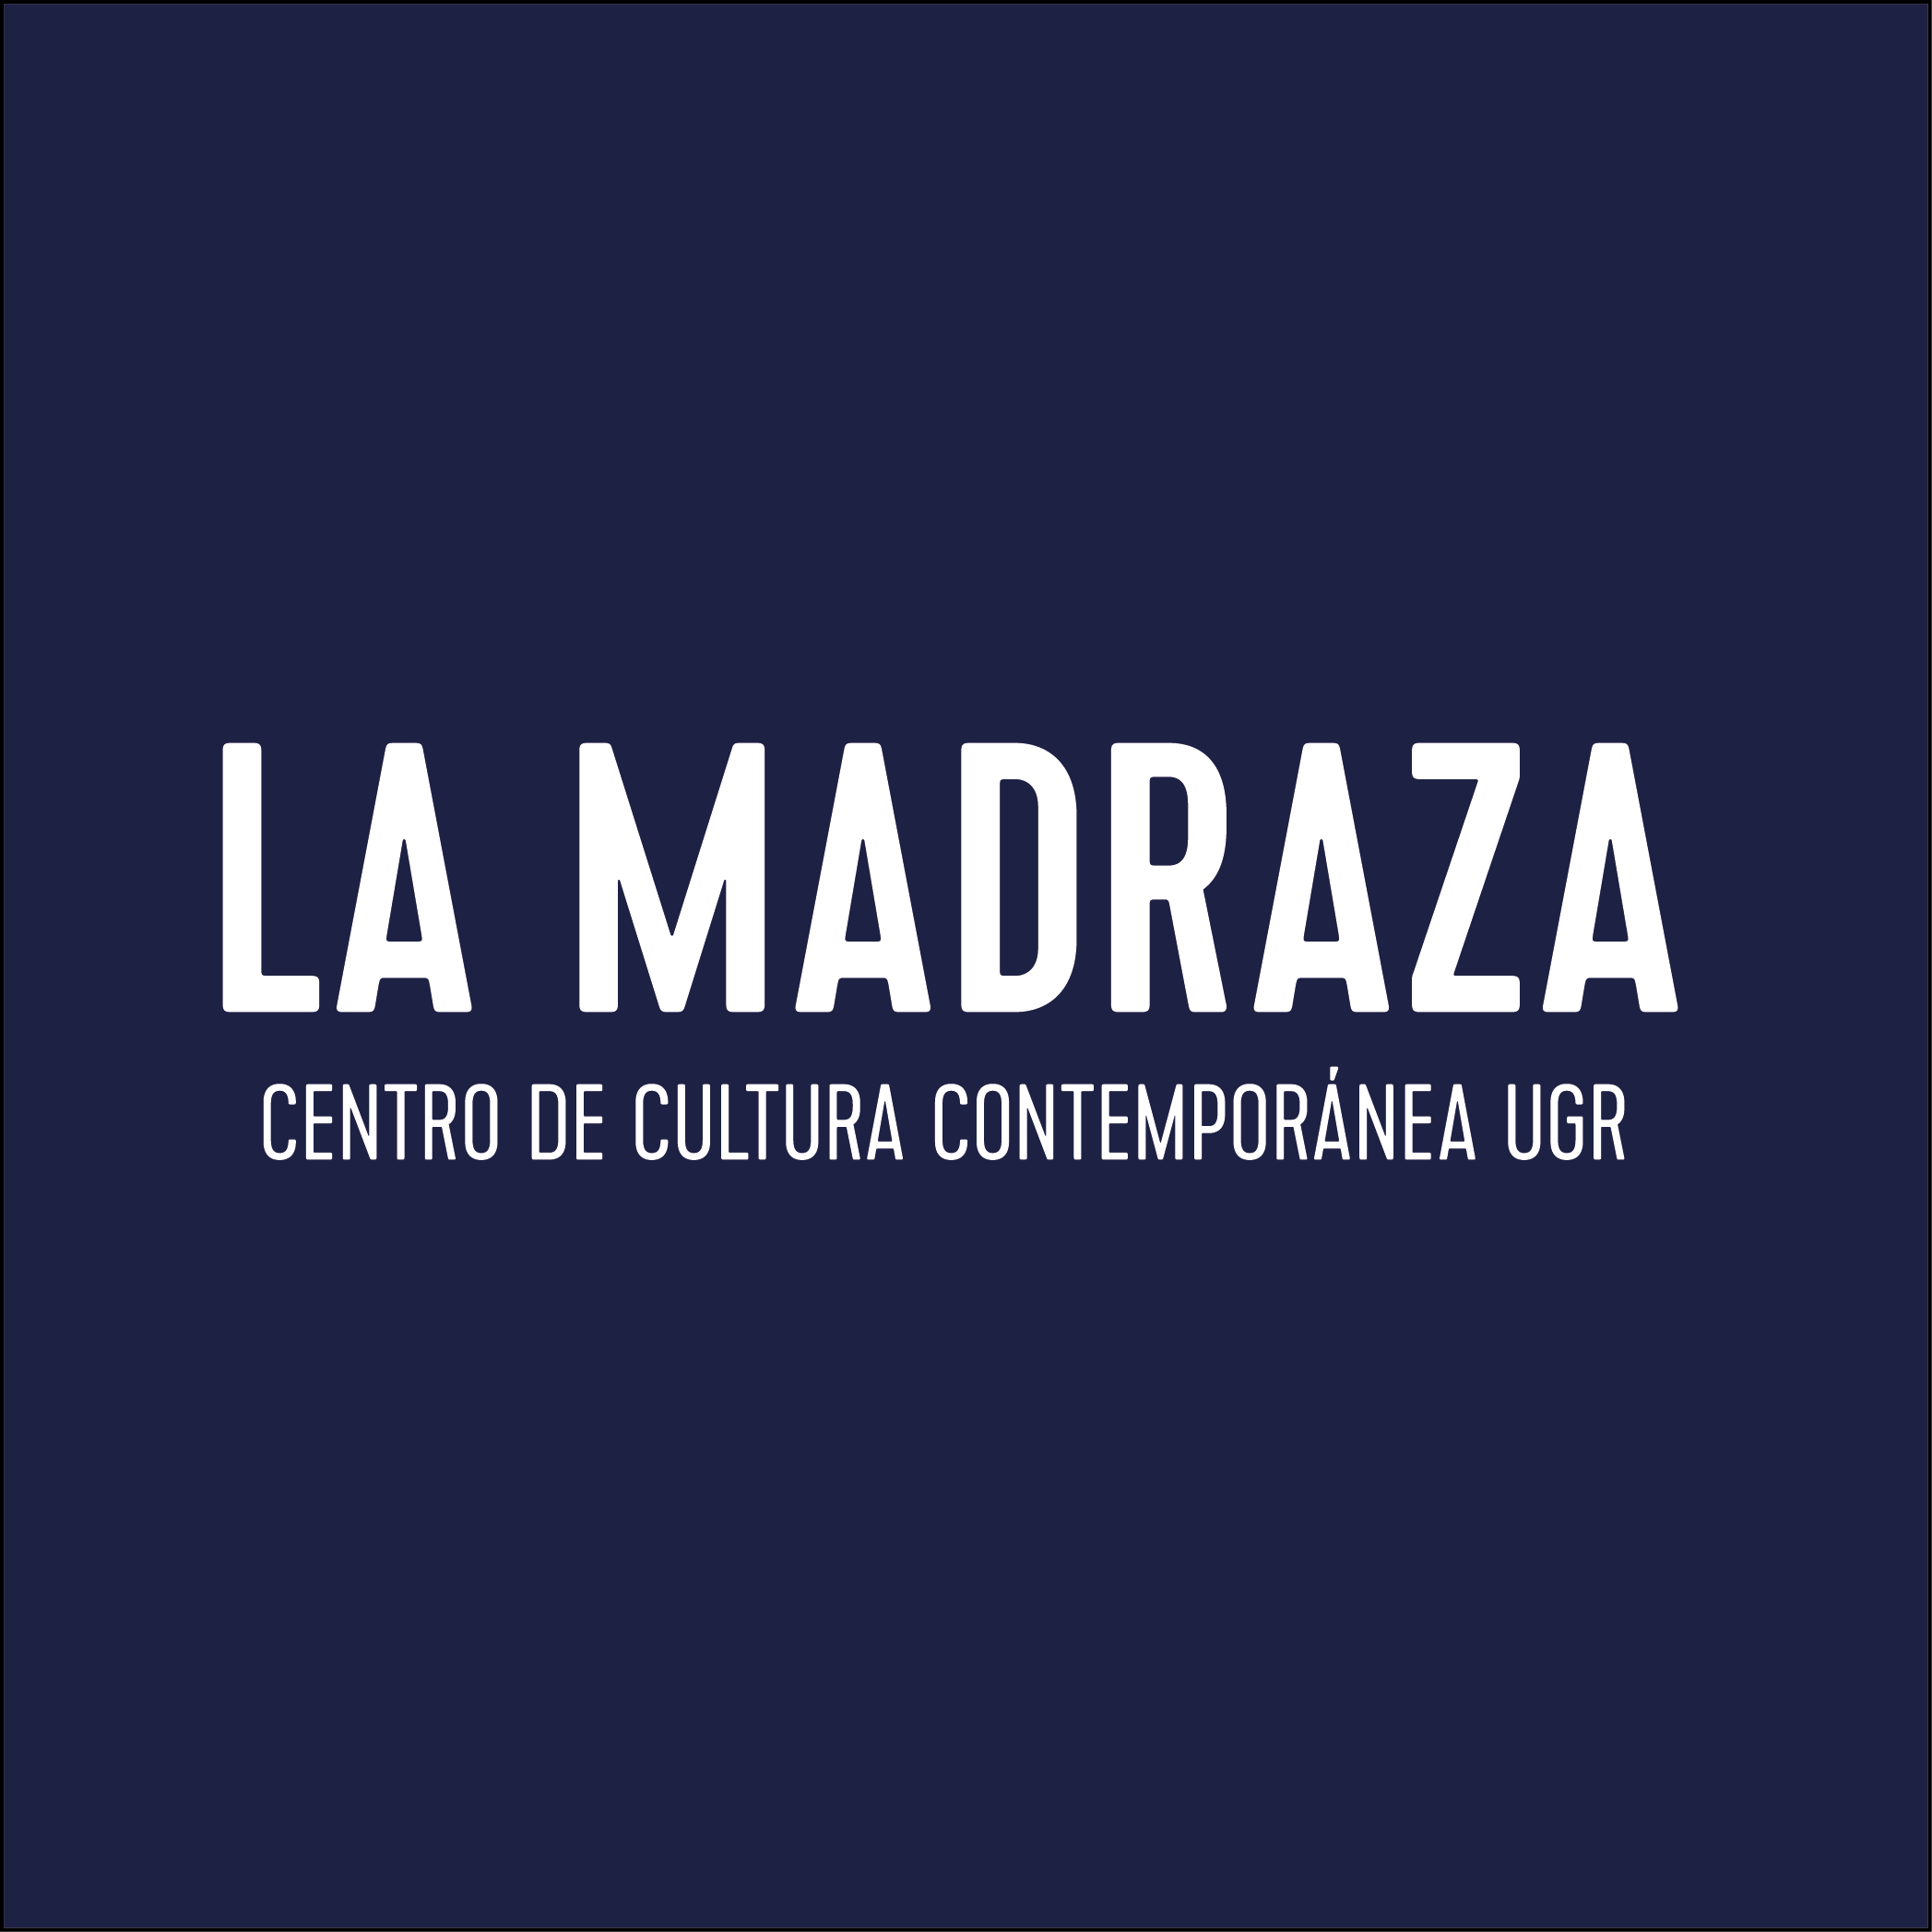 Imagen de portada de Información sobre el acceso a los eventos de la agenda cultural de La Madraza